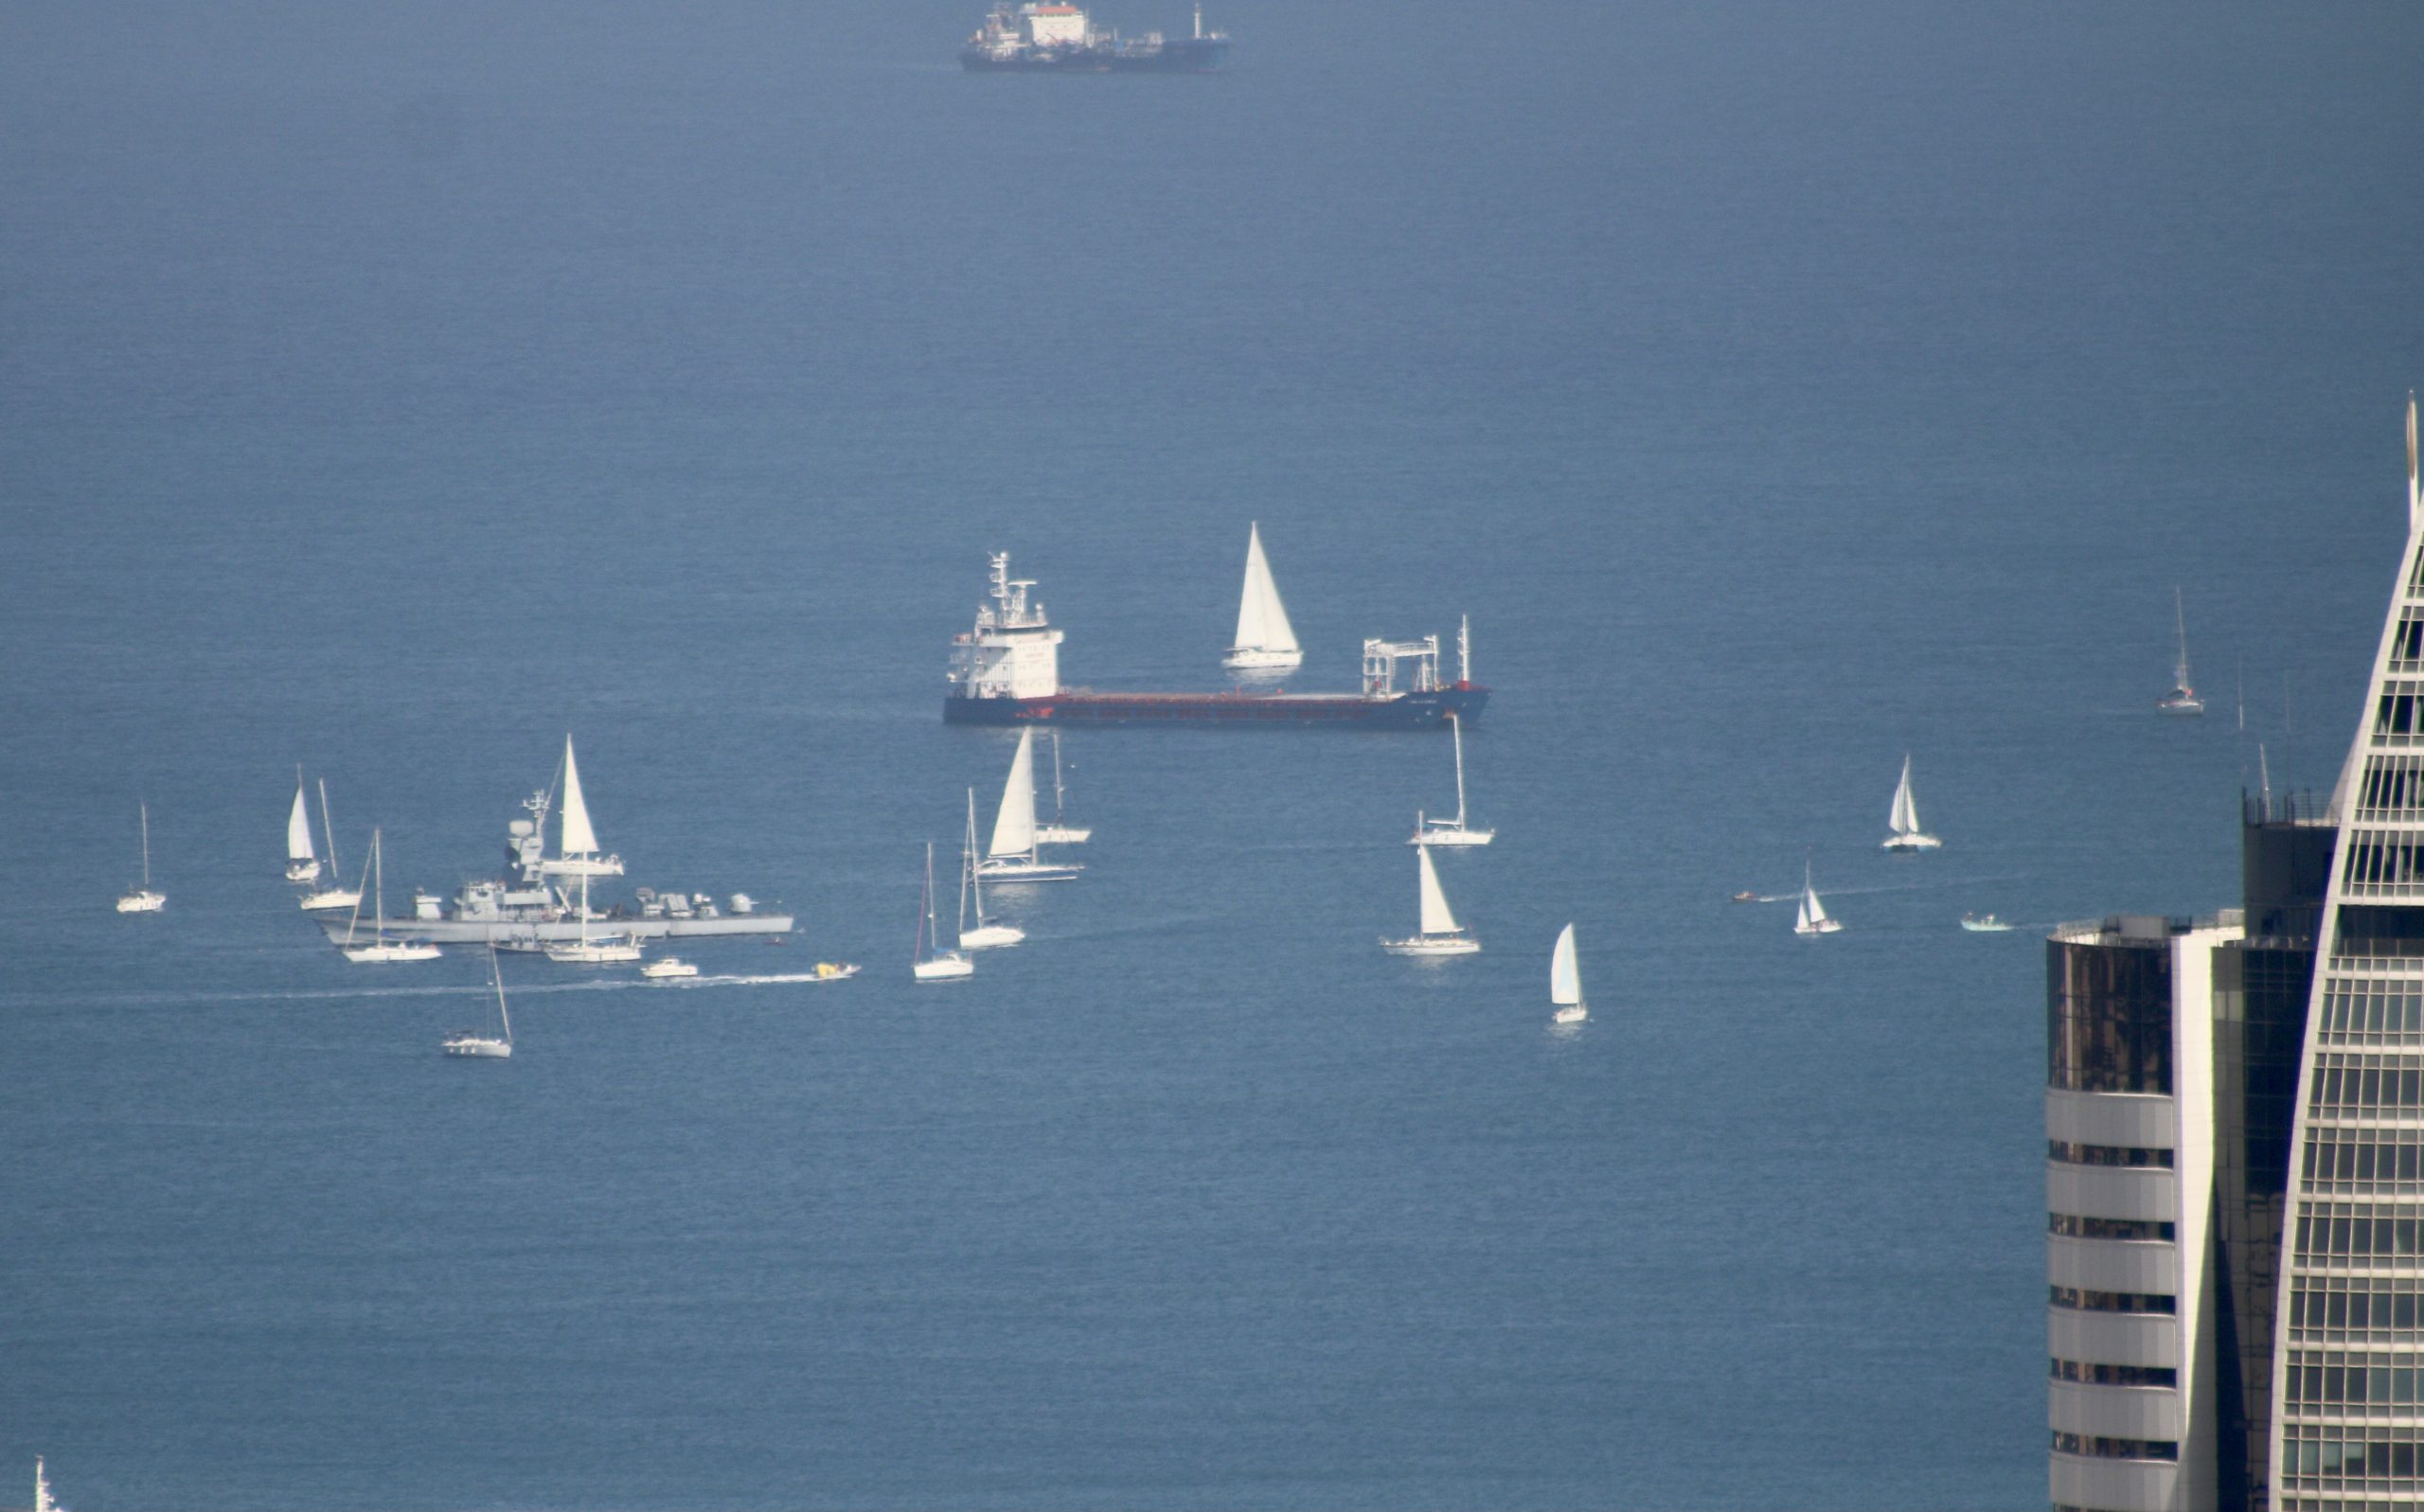 Haifa: Sailboats Greeting Israel Navy Patrol Ship